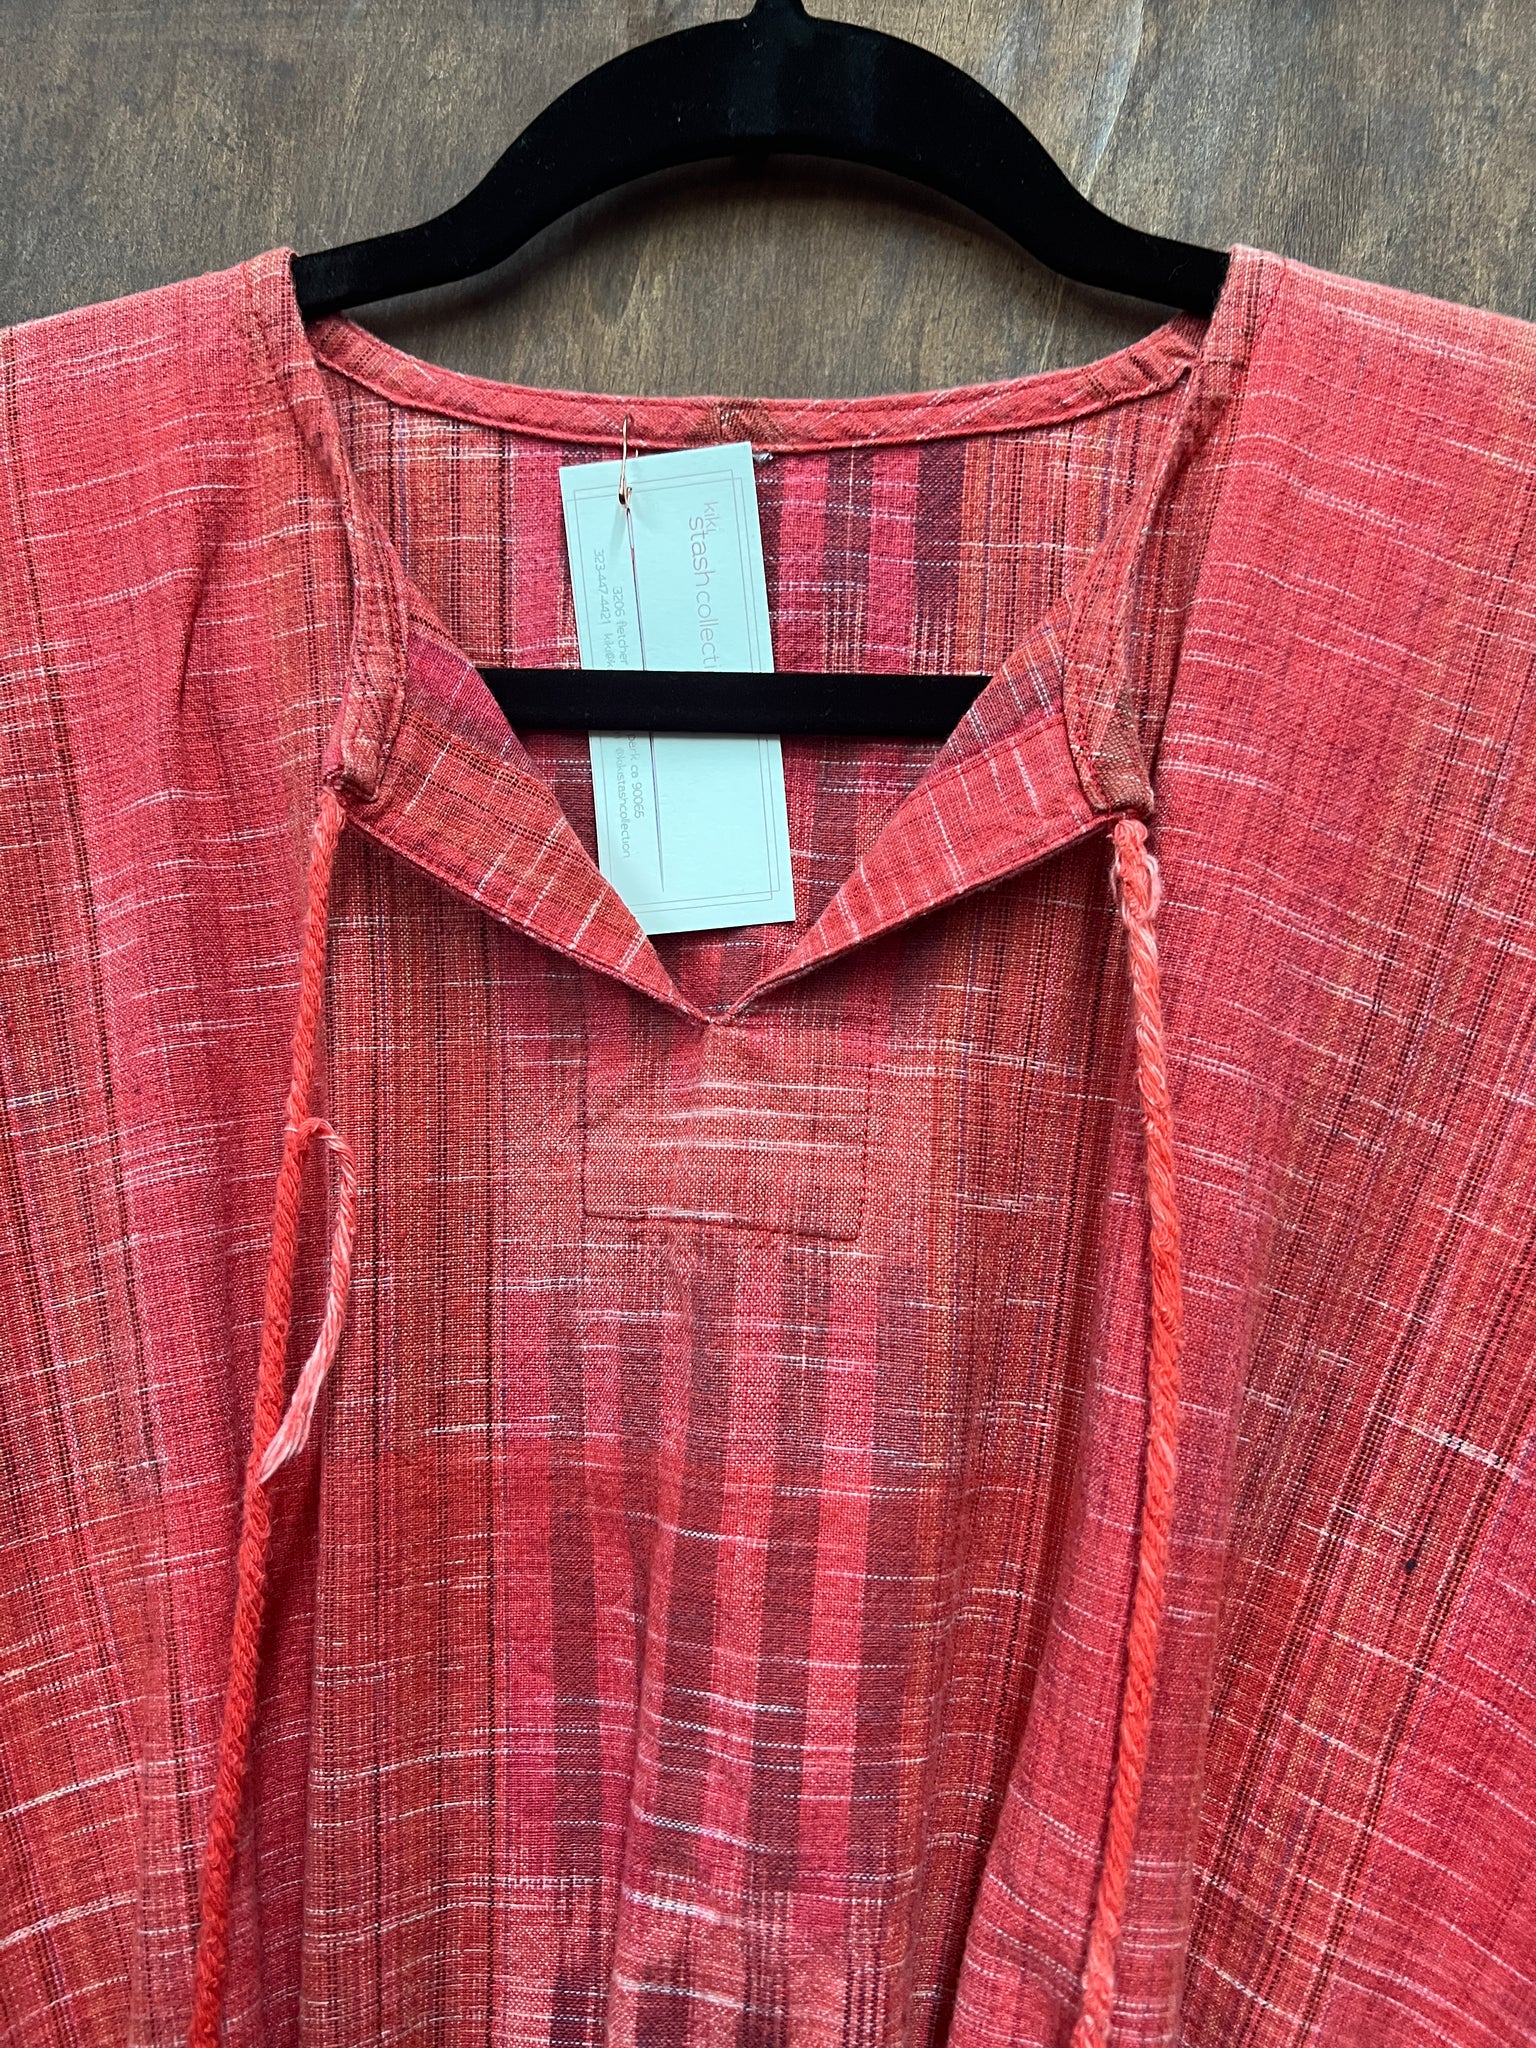 1970s TOP- red ikat crop w/ wing sleeves & waist tie